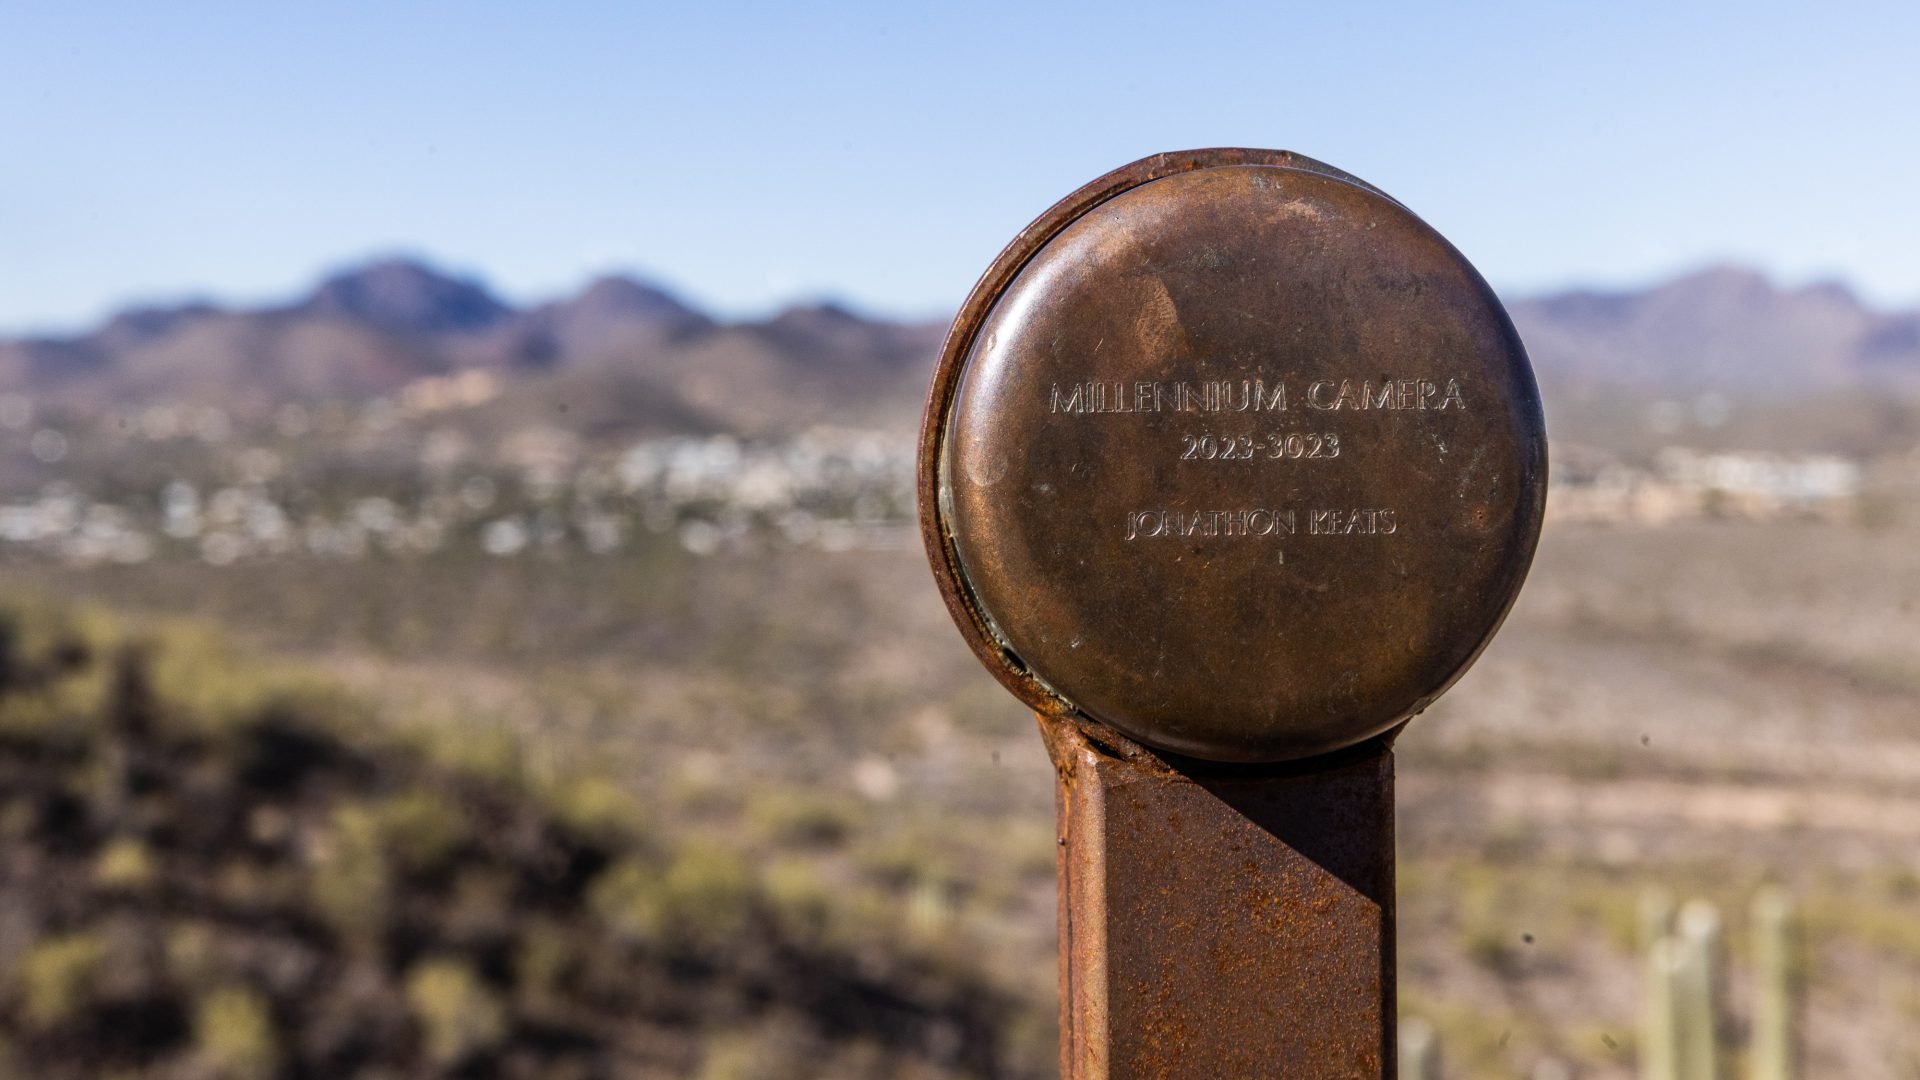 Kamera Millenium zainstalowana w Arizonie, ale zdjęcie będzie gotowe dopiero za 1000 lat